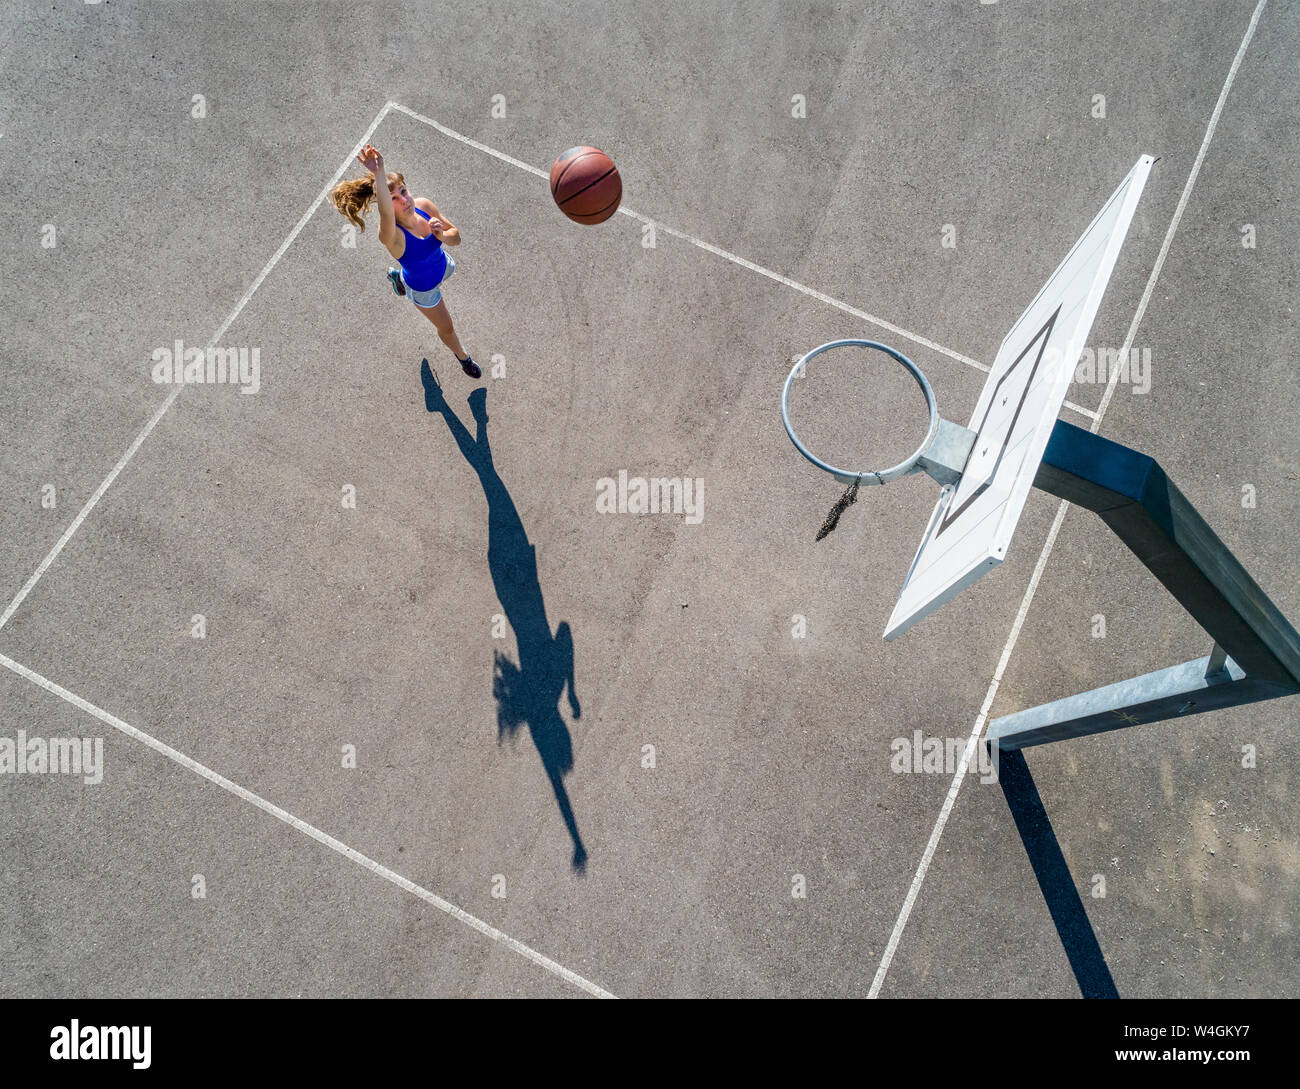 Vue aérienne de jeune femme jouant au basket-ball Banque D'Images